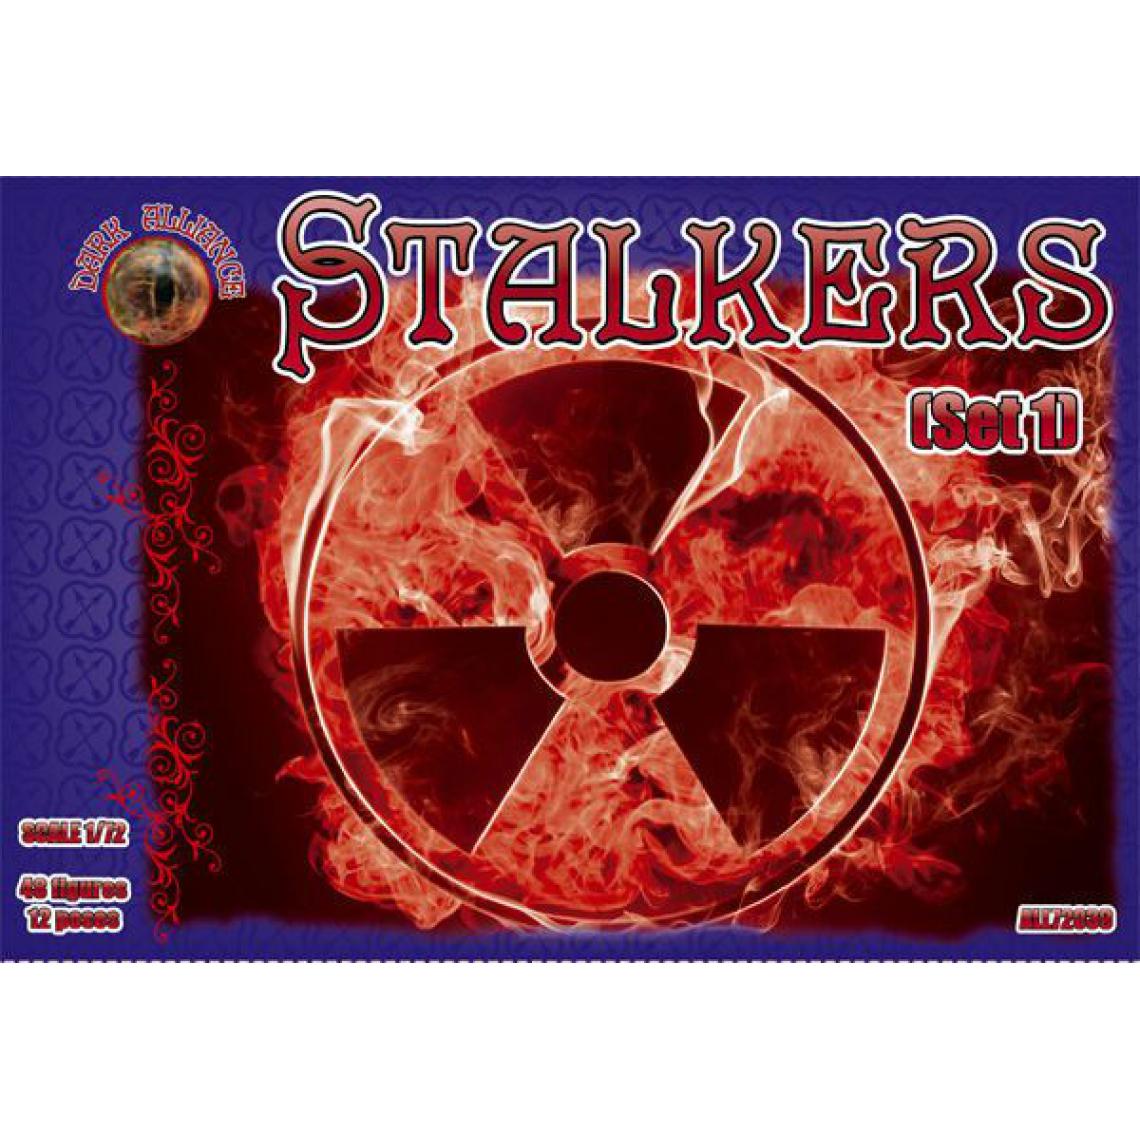 Alliance - Stalkers, set 1 - 1:72e - ALLIANCE - Accessoires et pièces